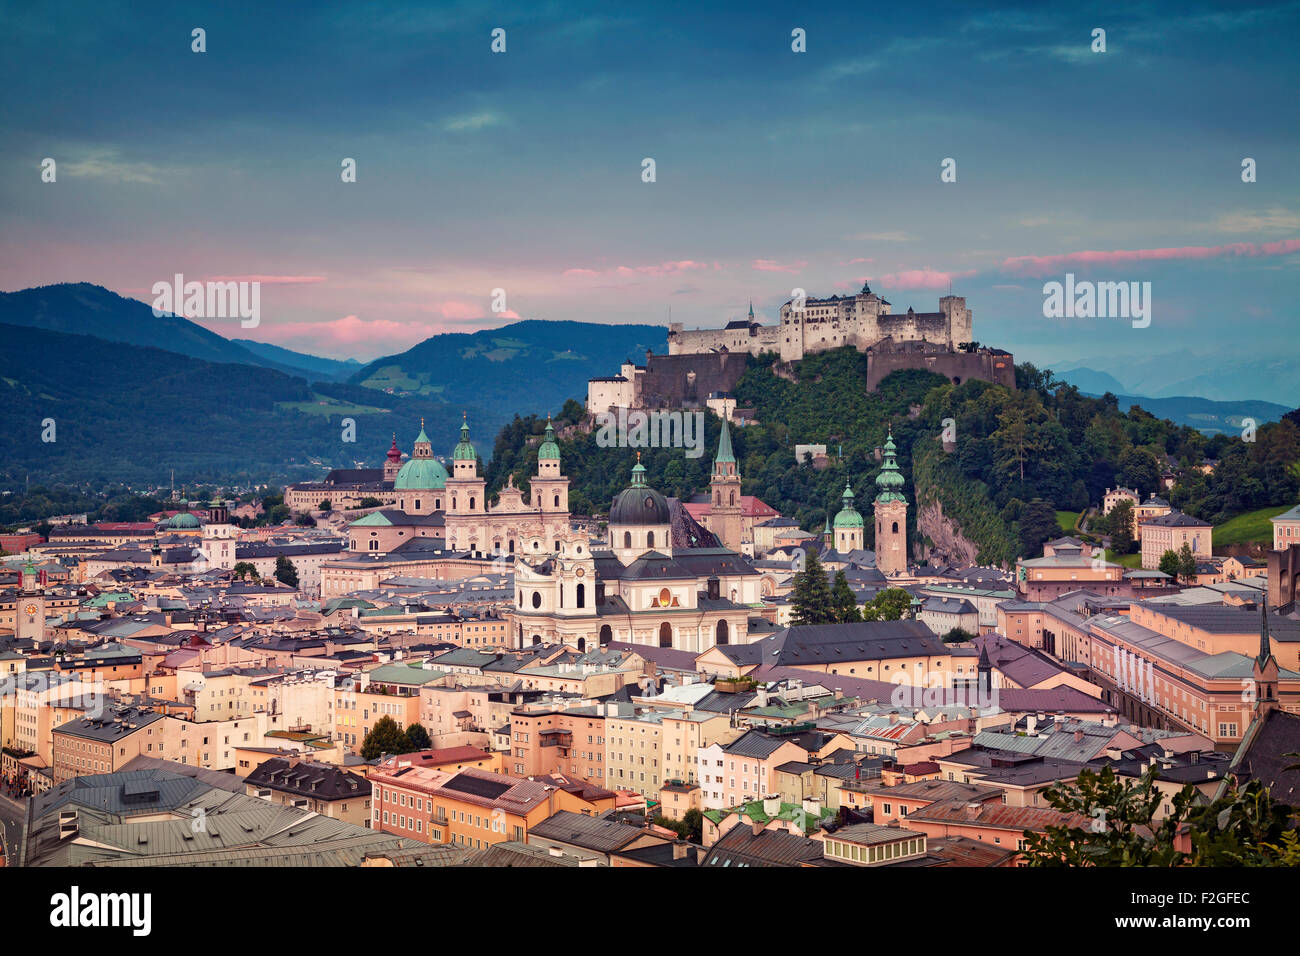 Salzburg, Österreich. Bild von Salzburg bei Dämmerung dramatische Sonnenaufgang. Stockfoto